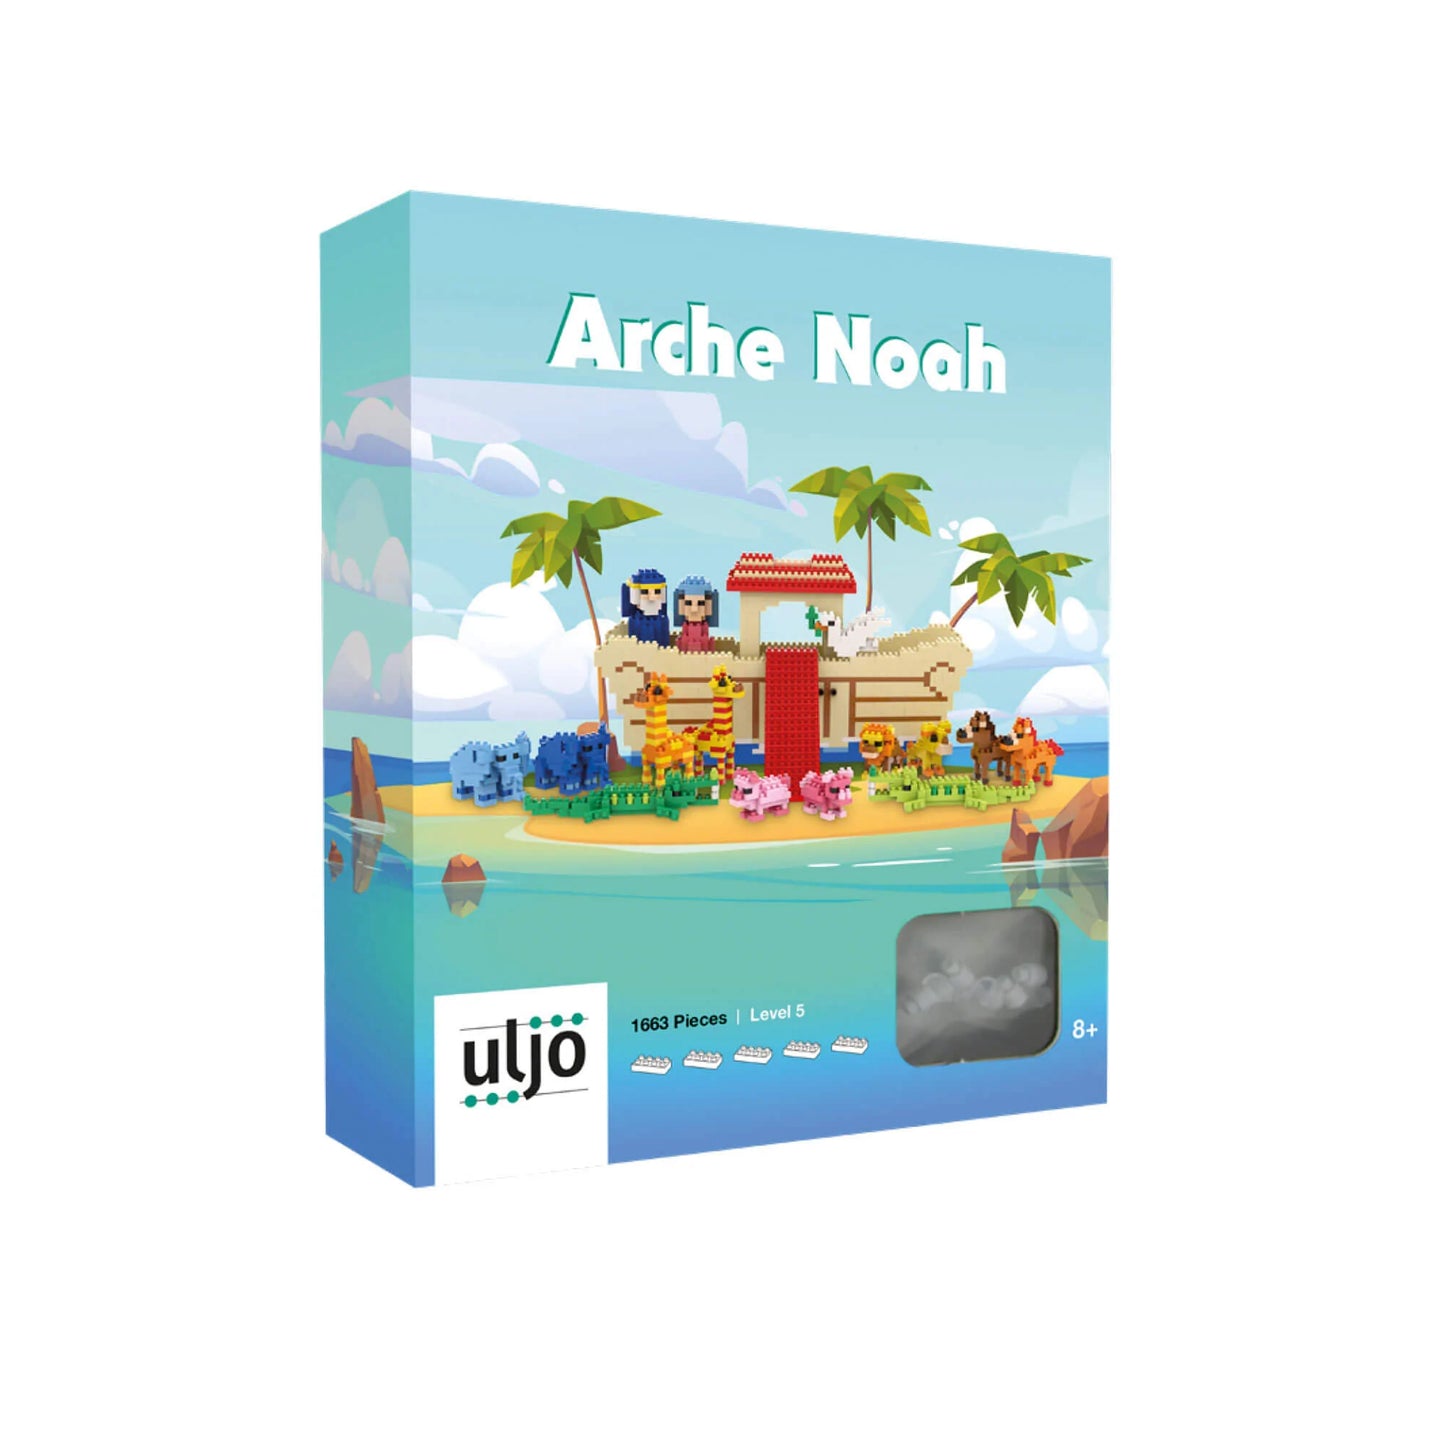 Arche Noah (Spiel mit mehr als 1600 Spielsteinen)